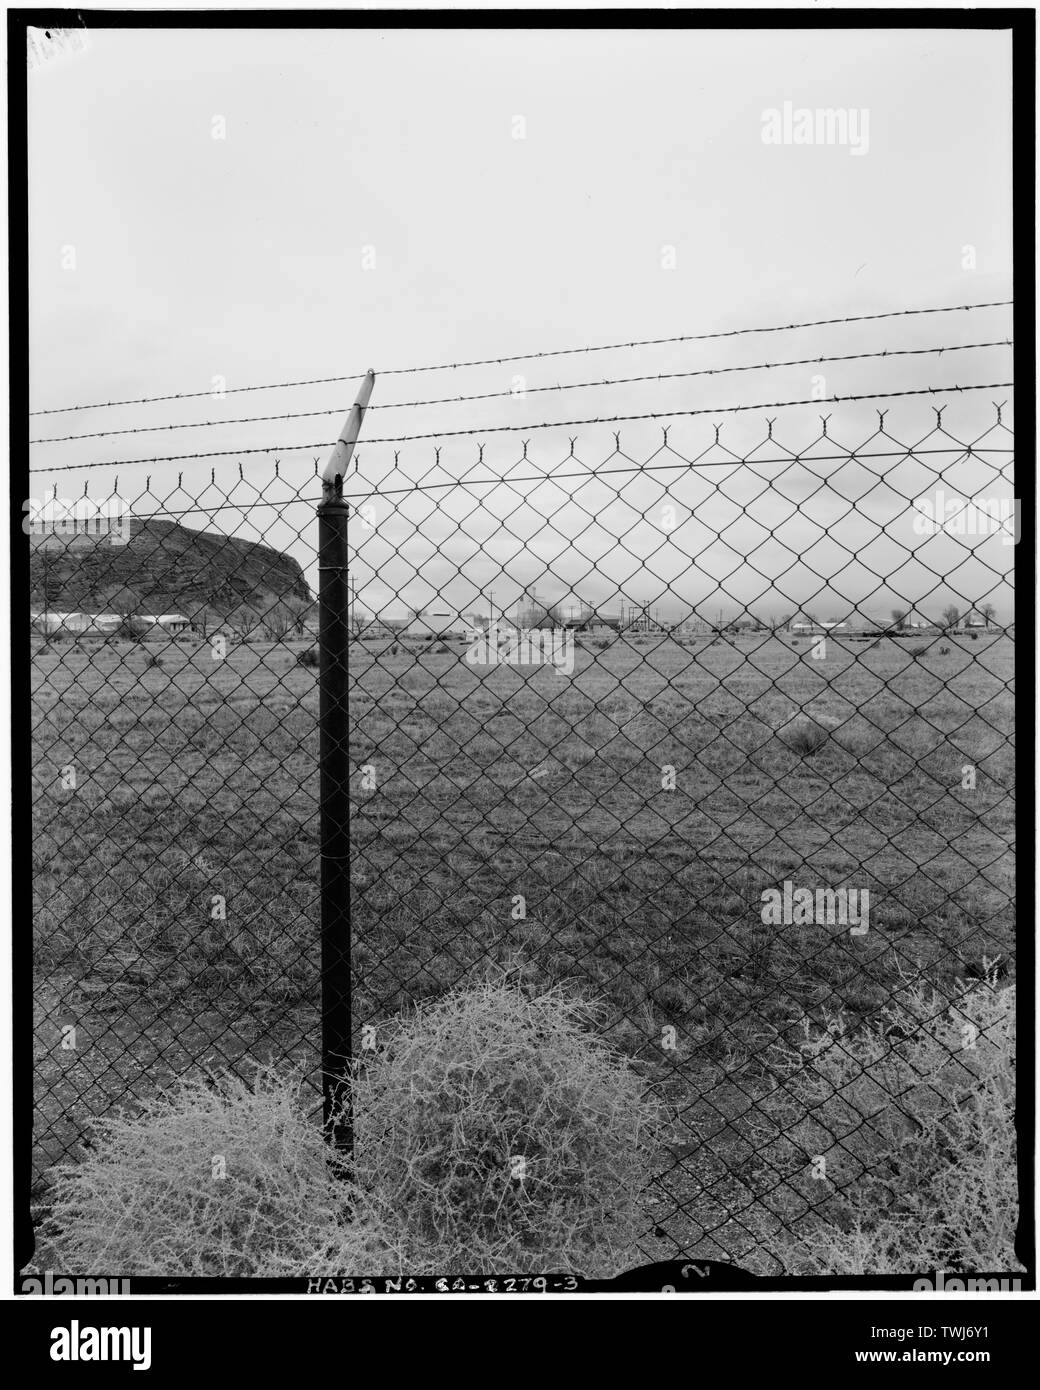 Einstellung; Blick nach Nordwesten durch Stockade Zaun, zu einer Szene wenig seit 1945 geändert; 90-mm-Objektiv. - Tule Lake Projekt Gefängnis, Post 1,6 Km 44,85, State Route 139, Newell, modoc County, CA Stockfoto